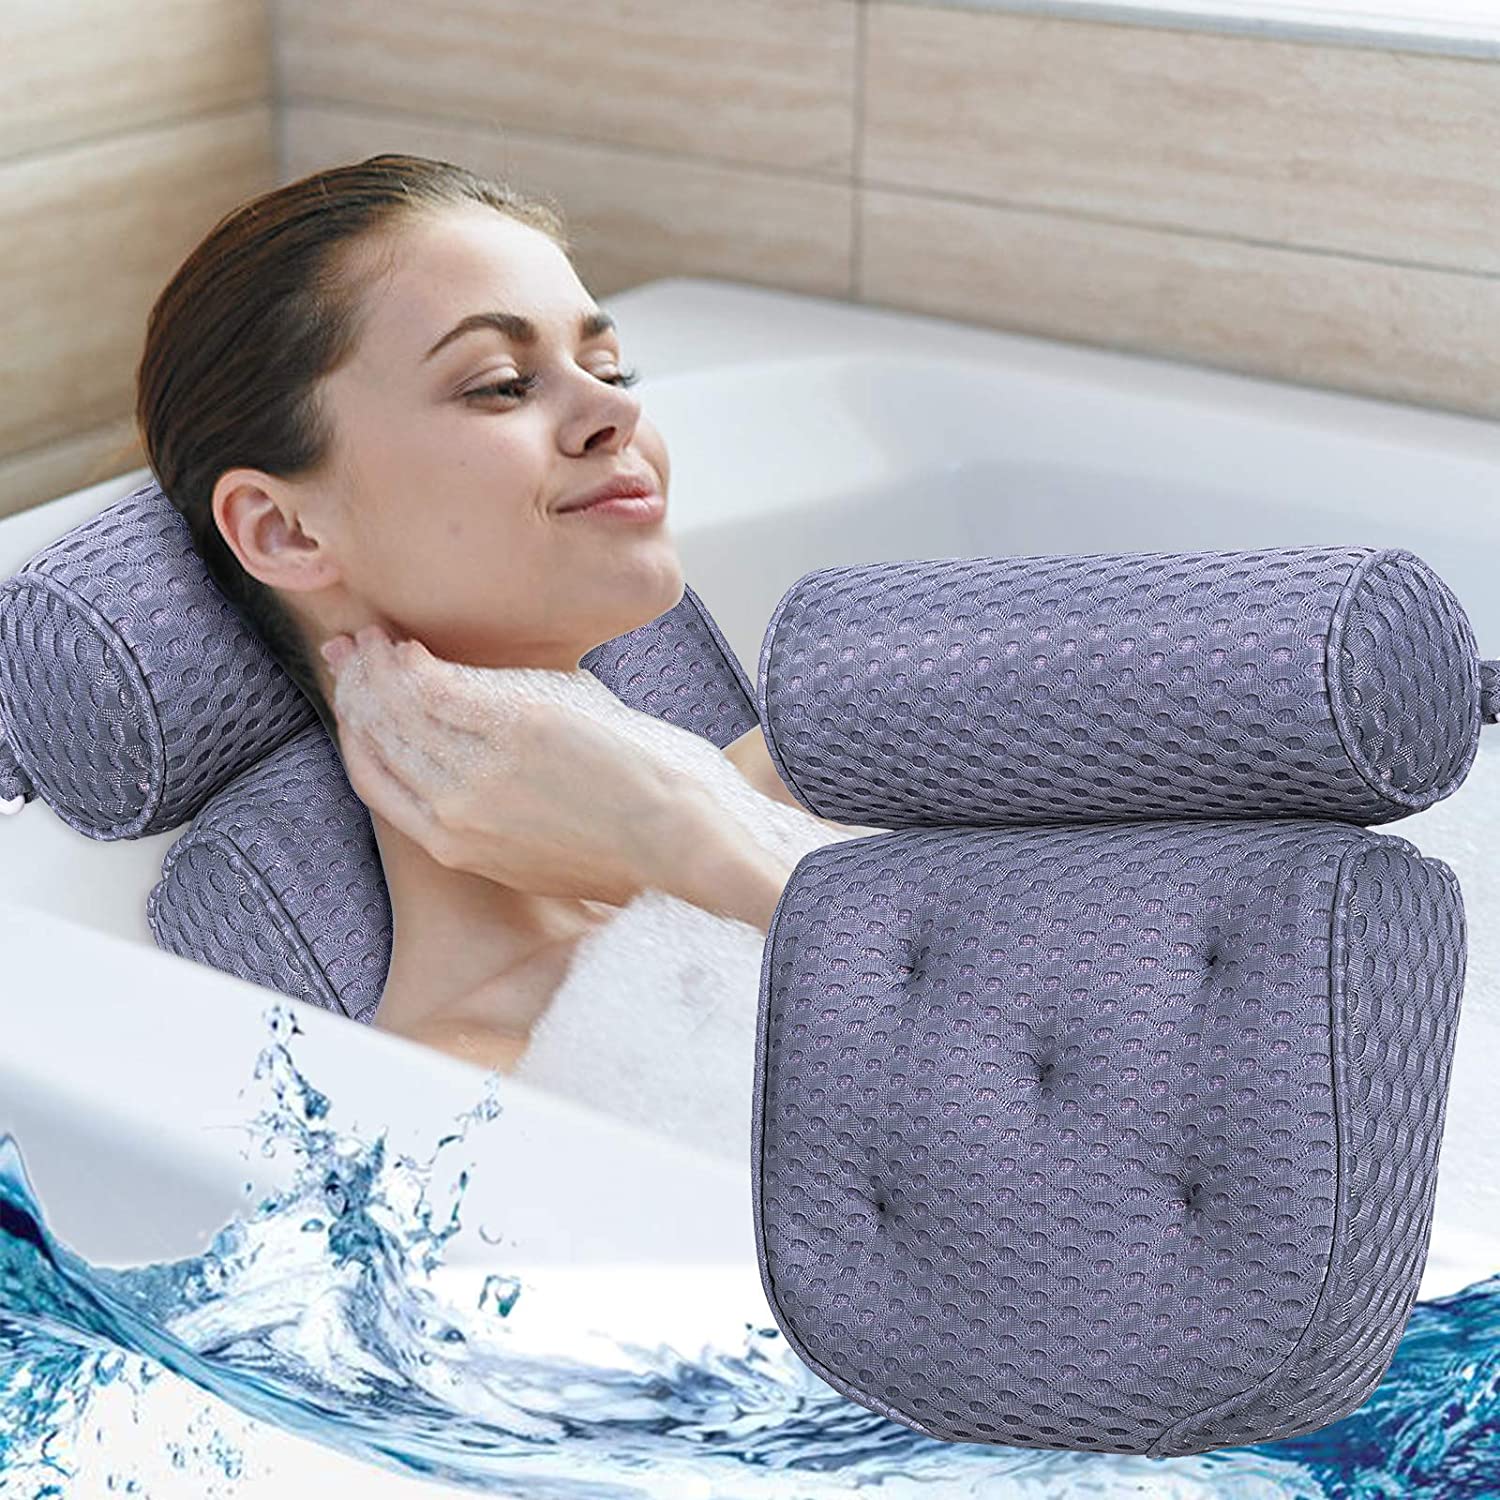 YLeing Badewannenkissen 3D Mesh Luxus Spa Bad Kissen Weiche Nackenstütze mit Rutschfeste Greif-Saugnäpfe für Badewanne Mold Resist Kissen